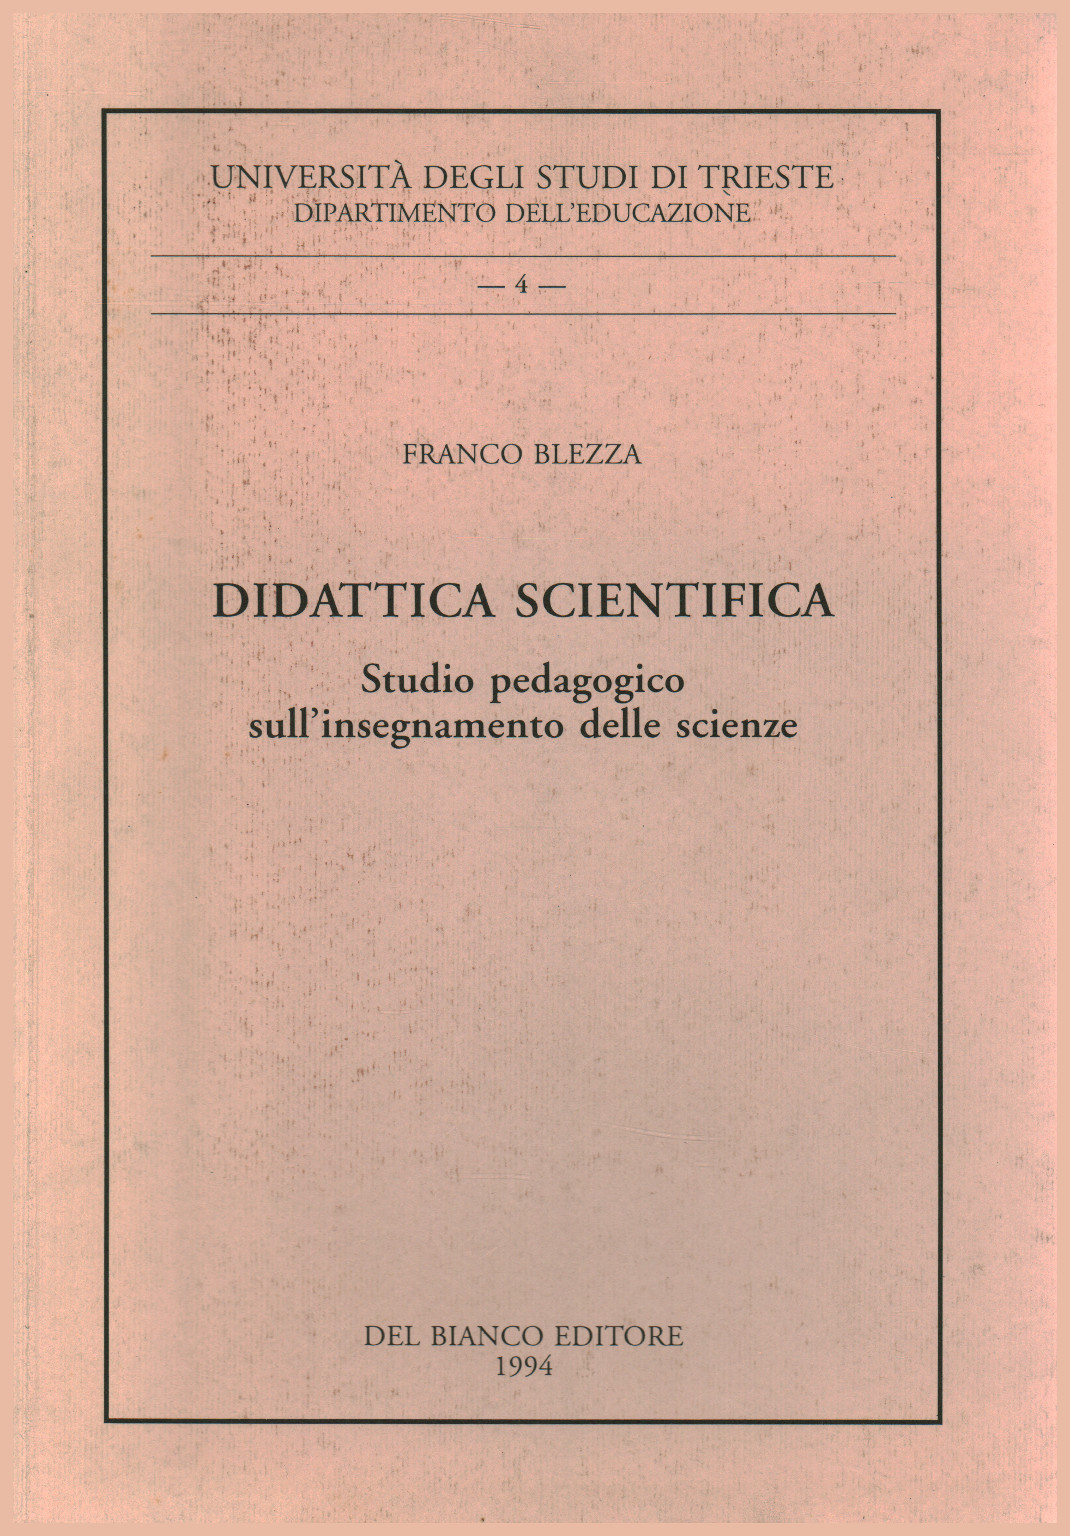 Didattica scientifica, s.a.